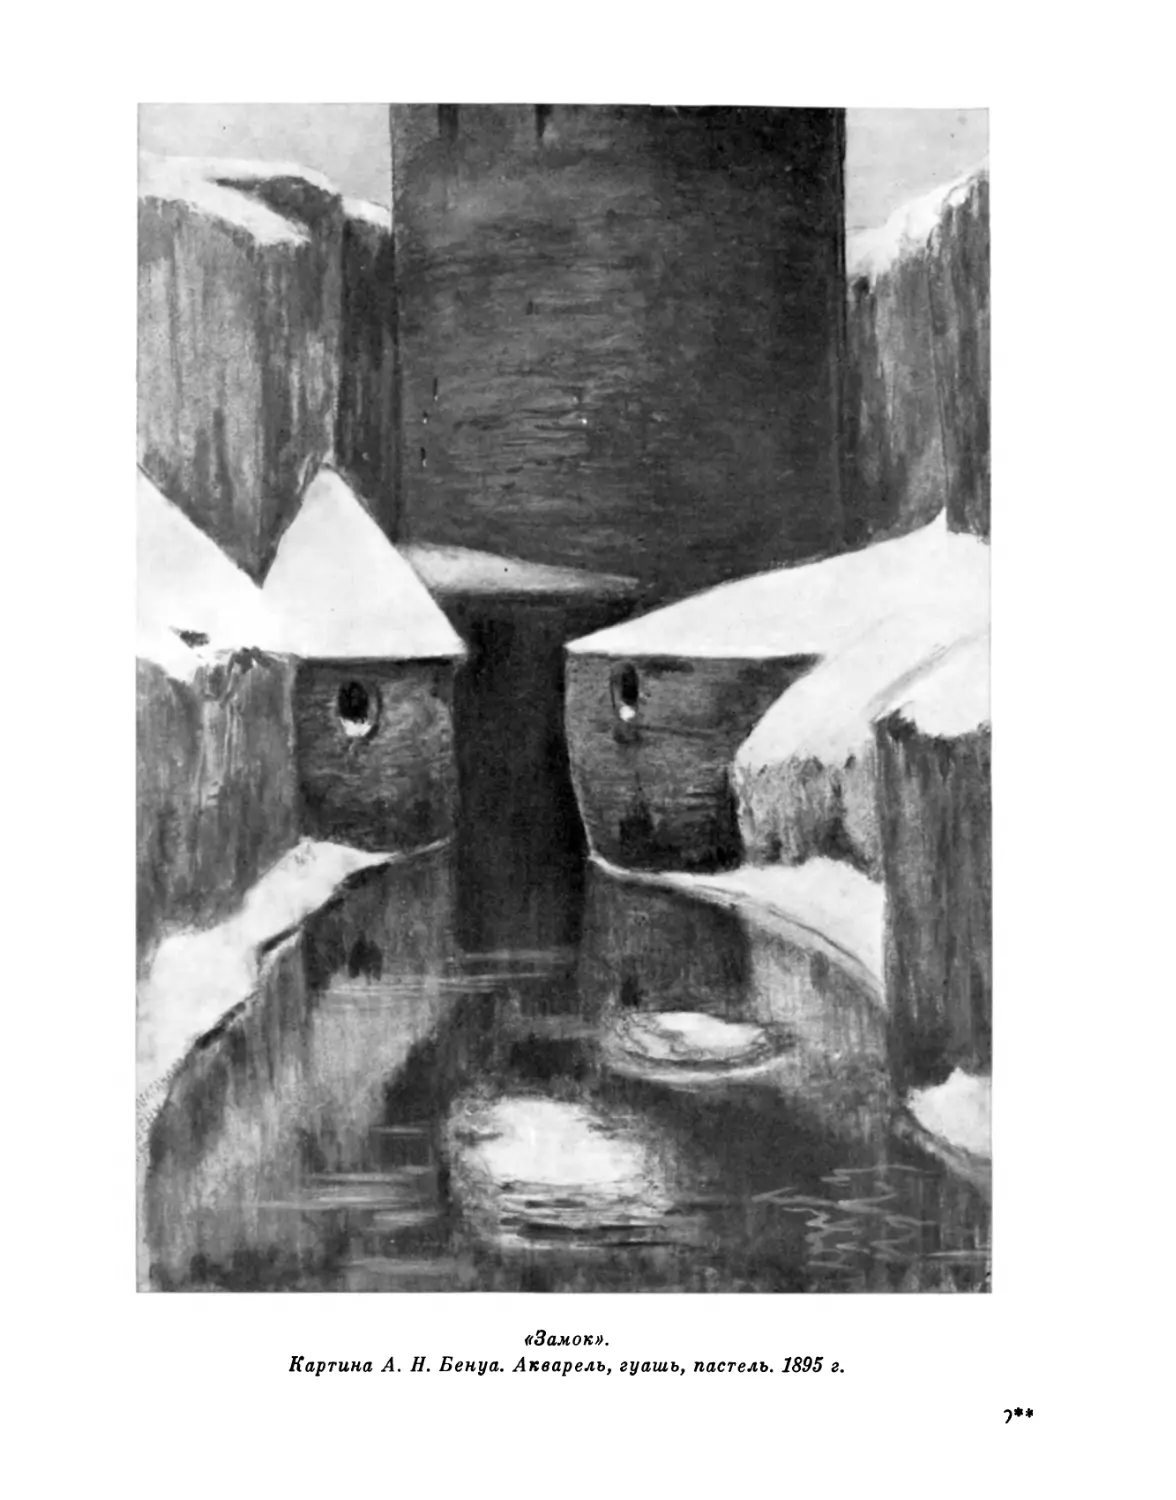 «Замок». Картина А. Н. Бенуа